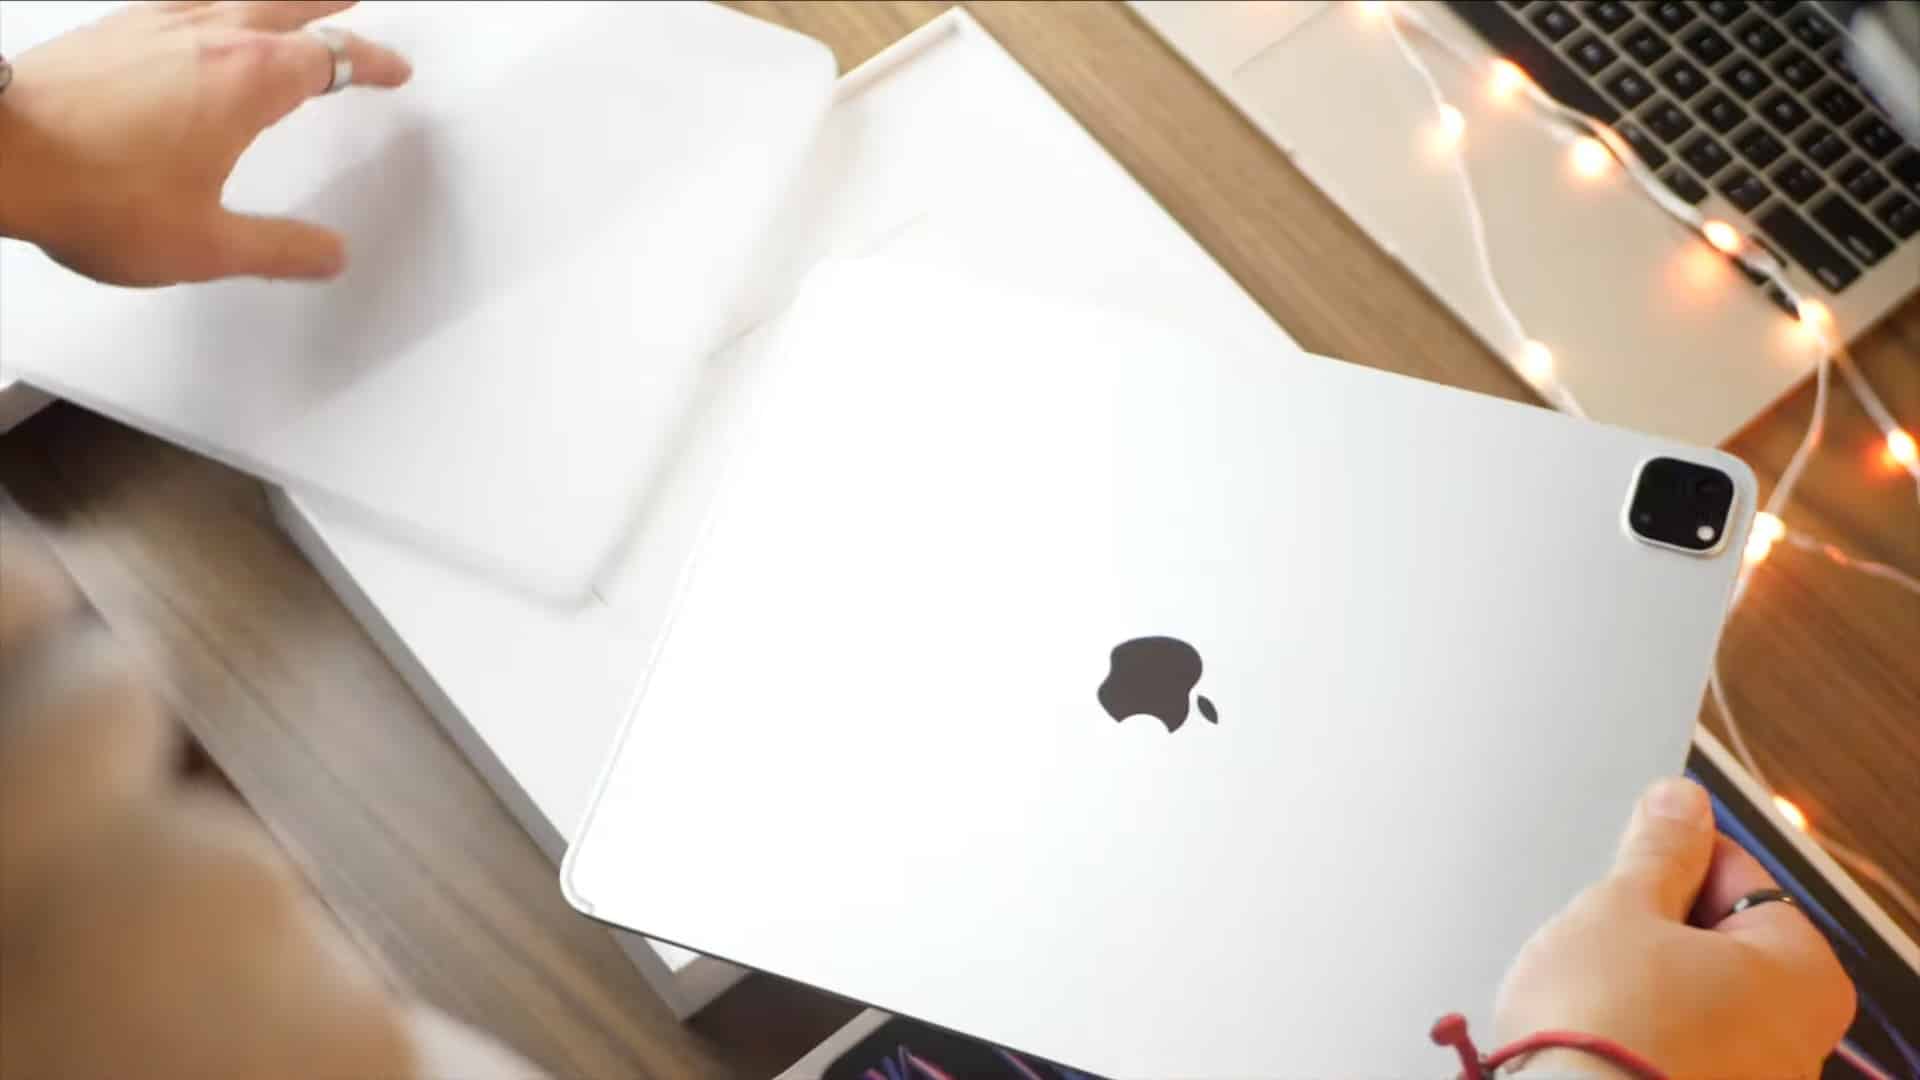 Les mains d'un jeune homme au-dessus d'un bureau en bois retirant l'emballage en plastique d'un tout nouvel iPad Pro 12,9 pouces 